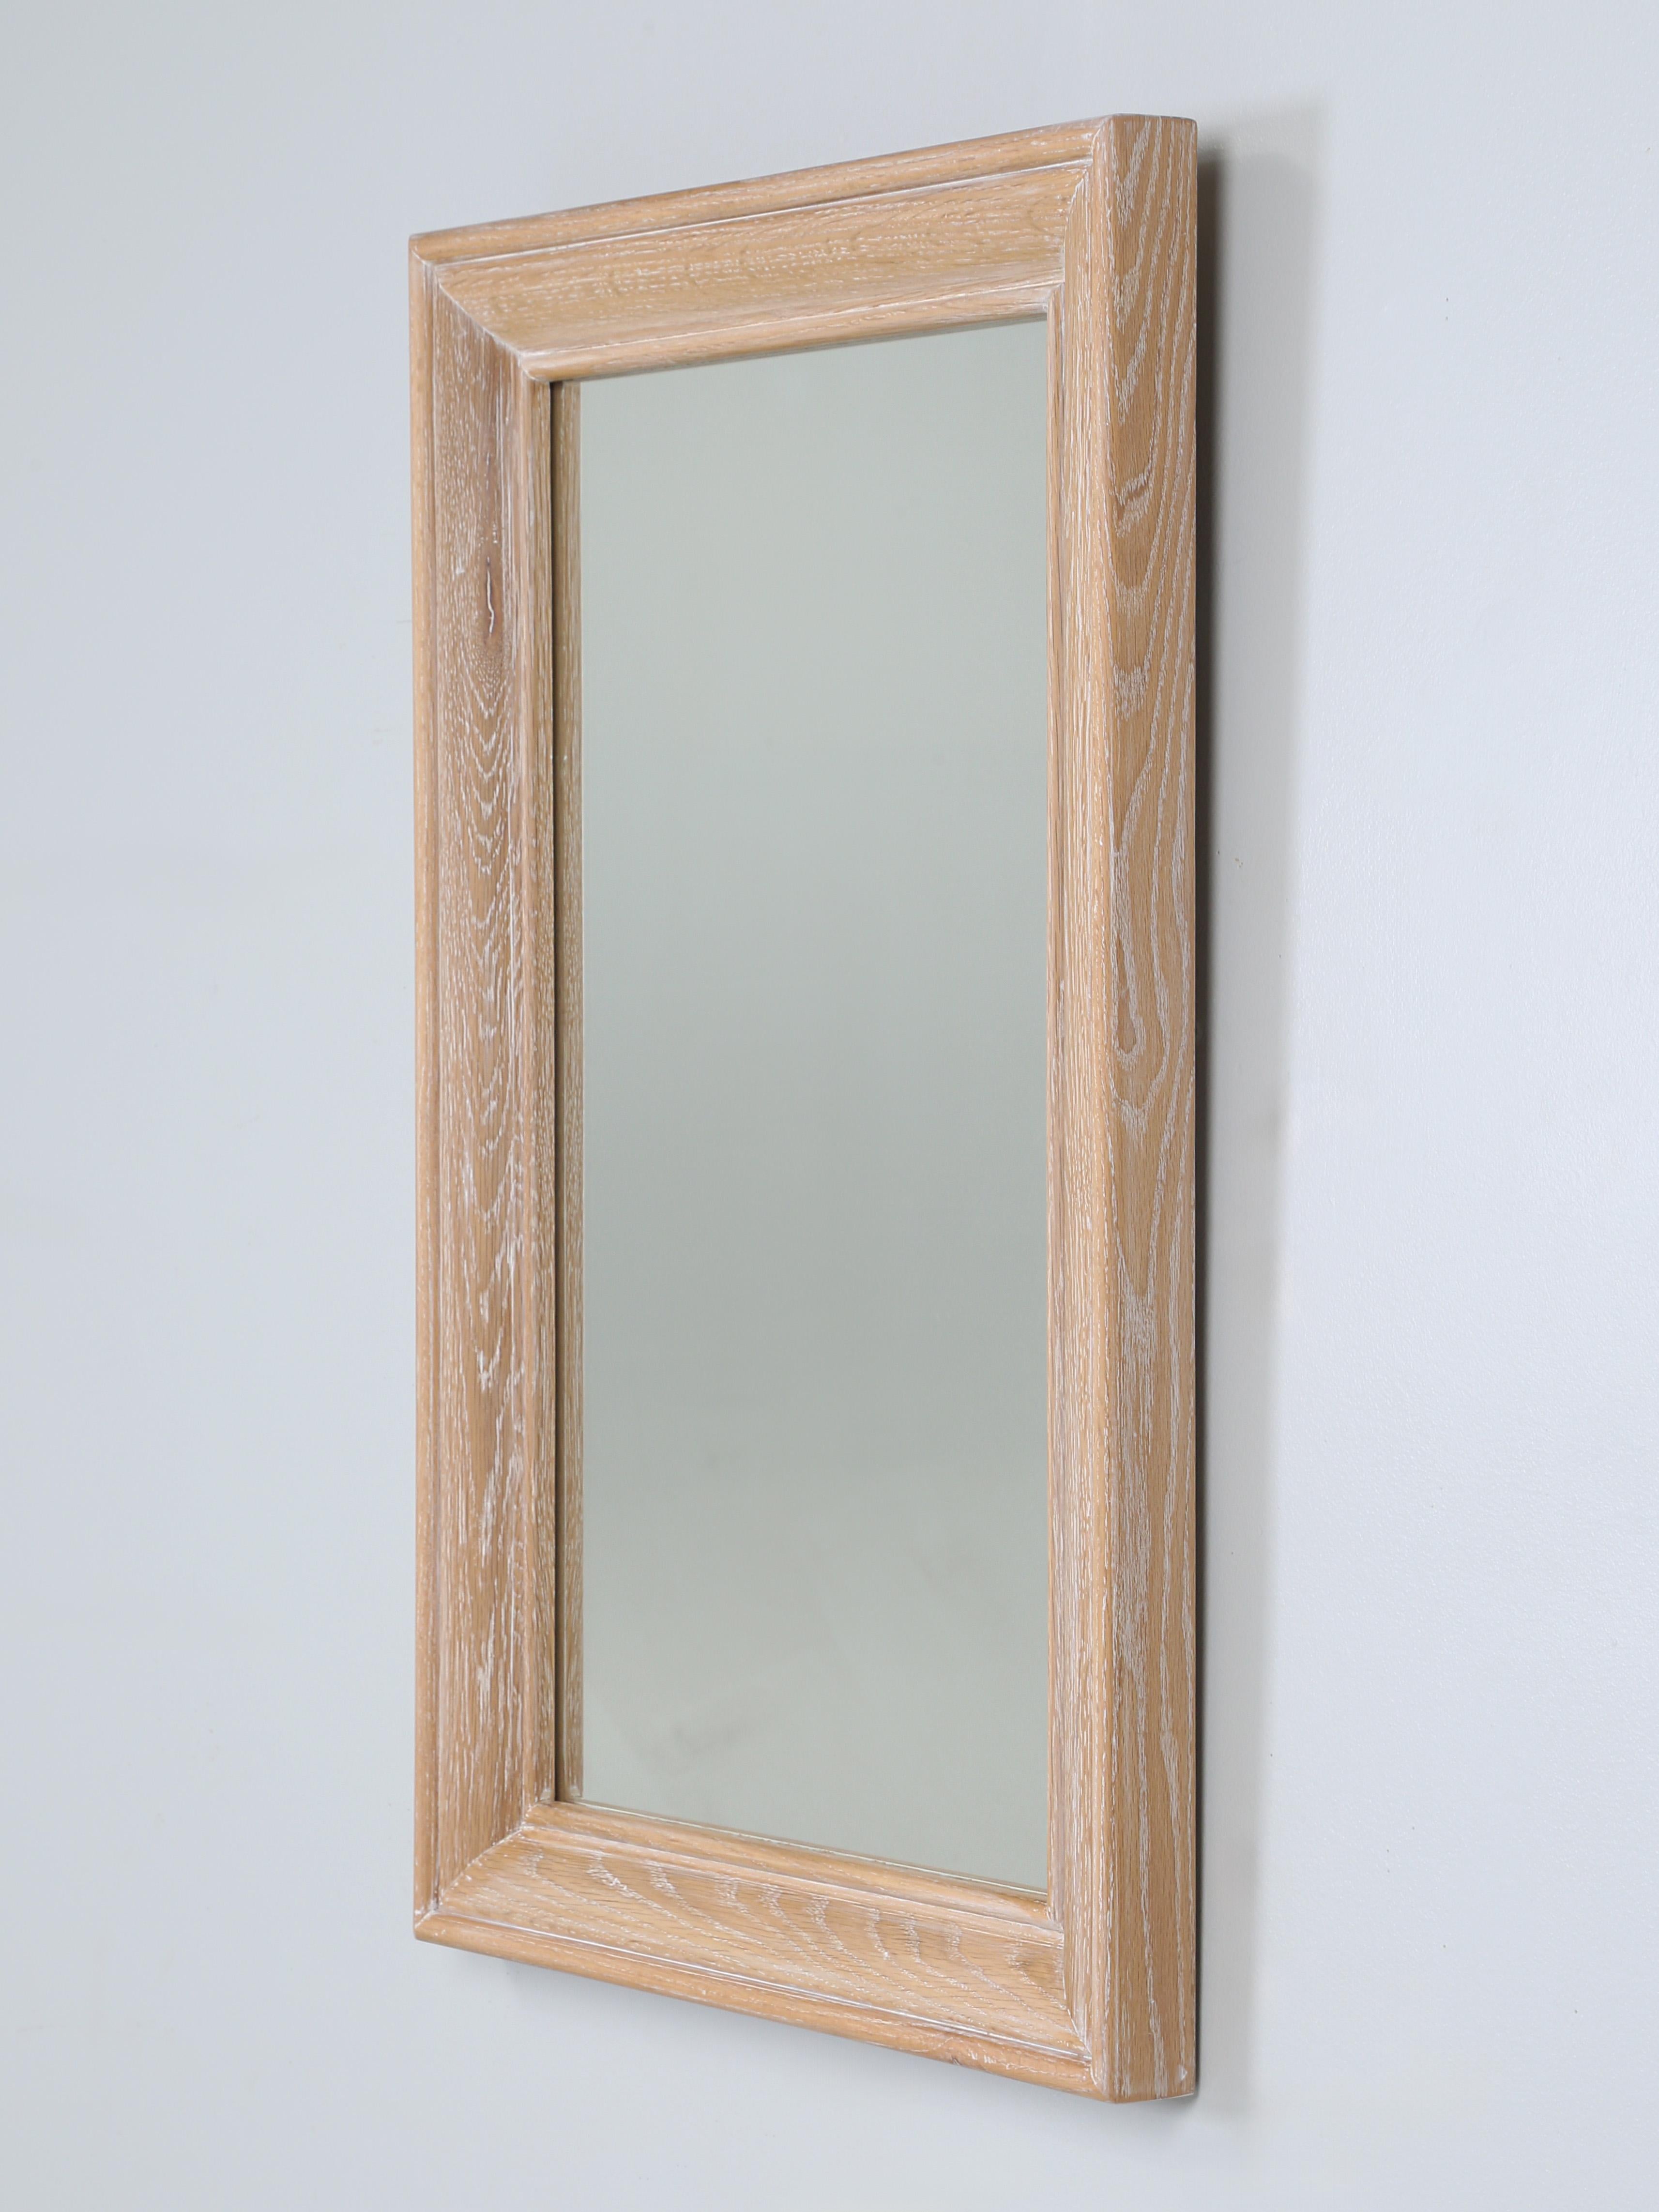 Handgefertigter Spiegel aus weißer Eiche von Old Plank in einer keramischen Ausführung. Unsere Wandspiegel aus Eichenholz werden in unserer Werkstatt nach Ihren spezifischen Maßen und in Ihrer Ausführung hergestellt. Die handgefertigten